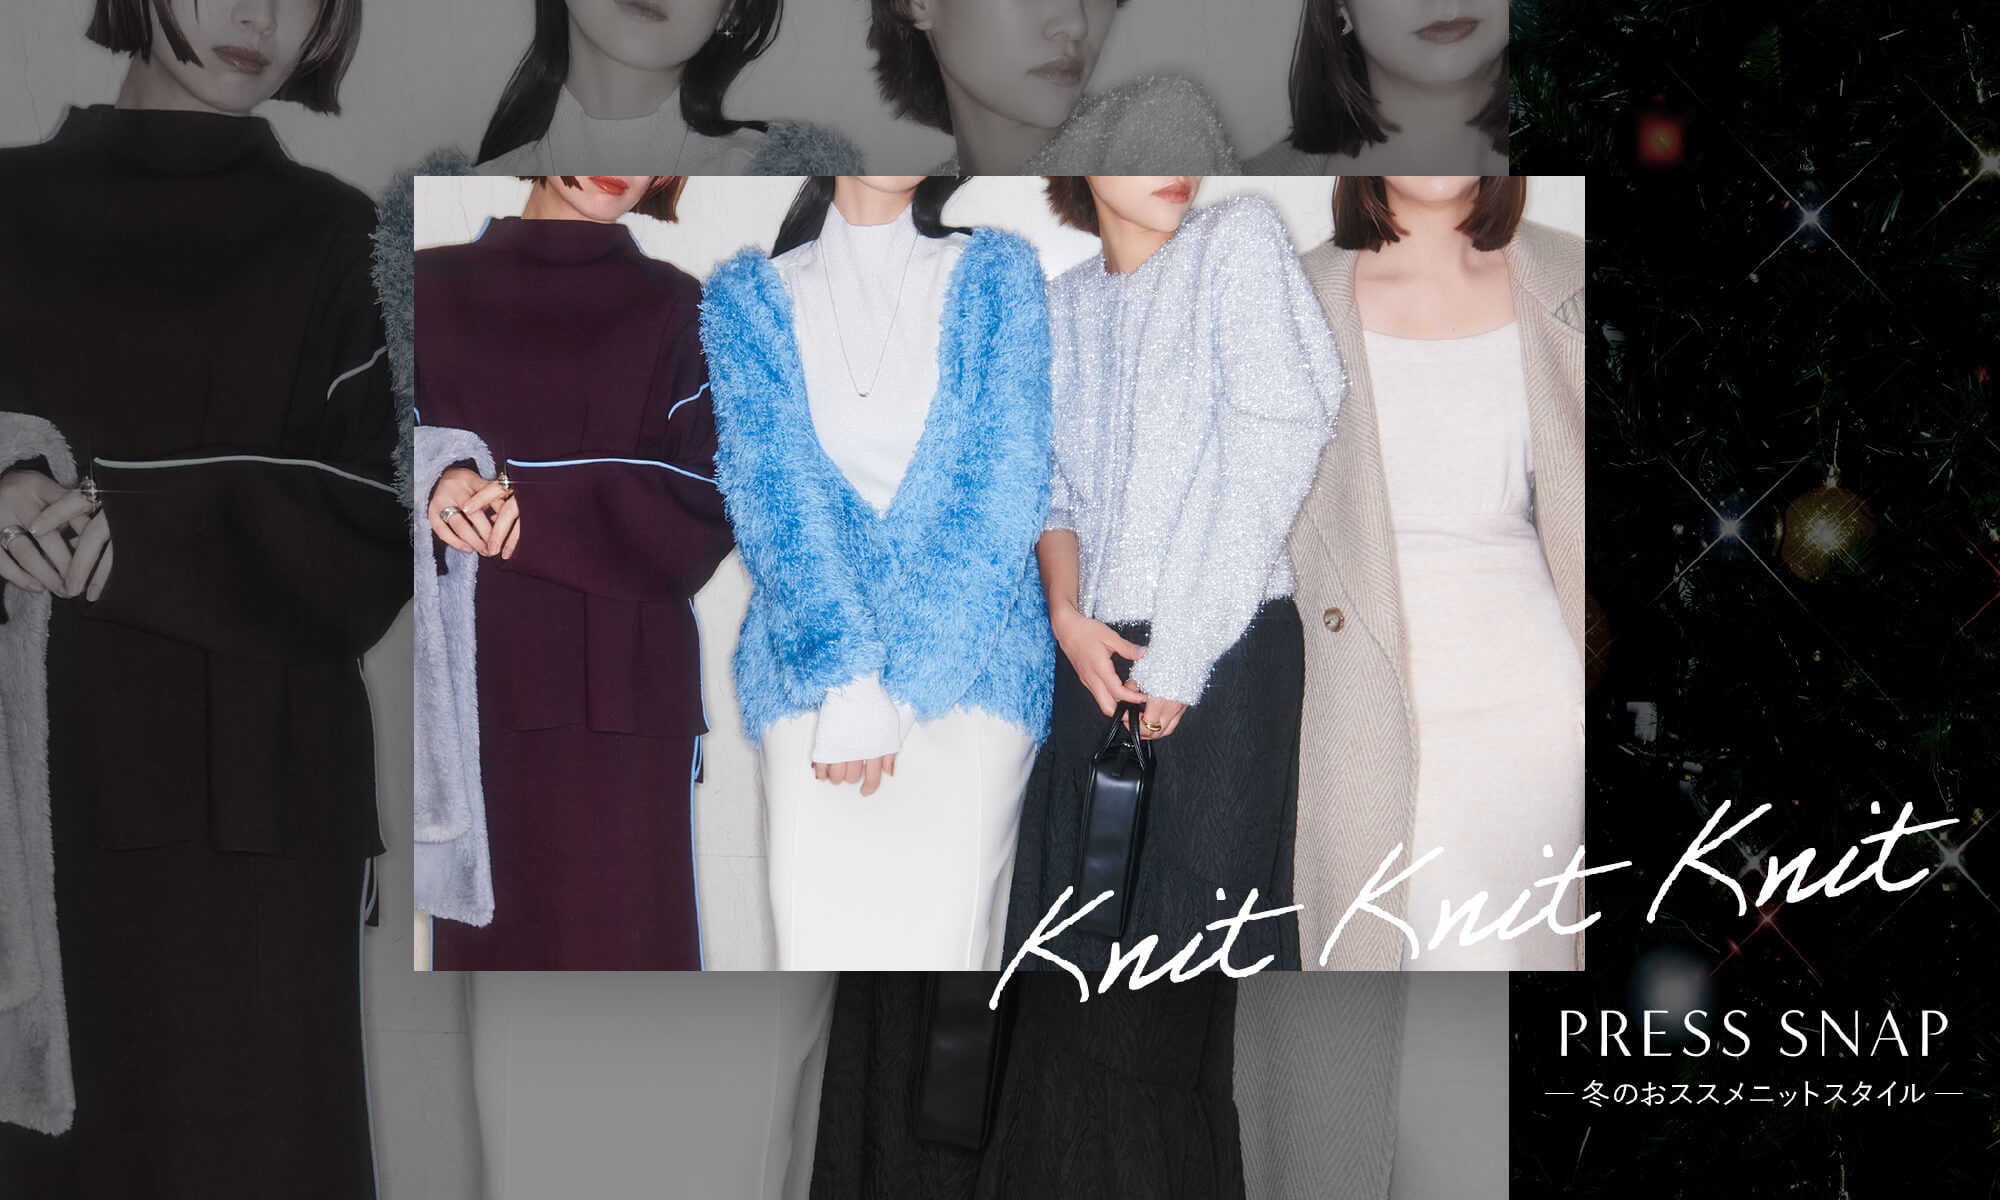 Knit Knit Knit PRESS SNAP 冬のオススメスタイル